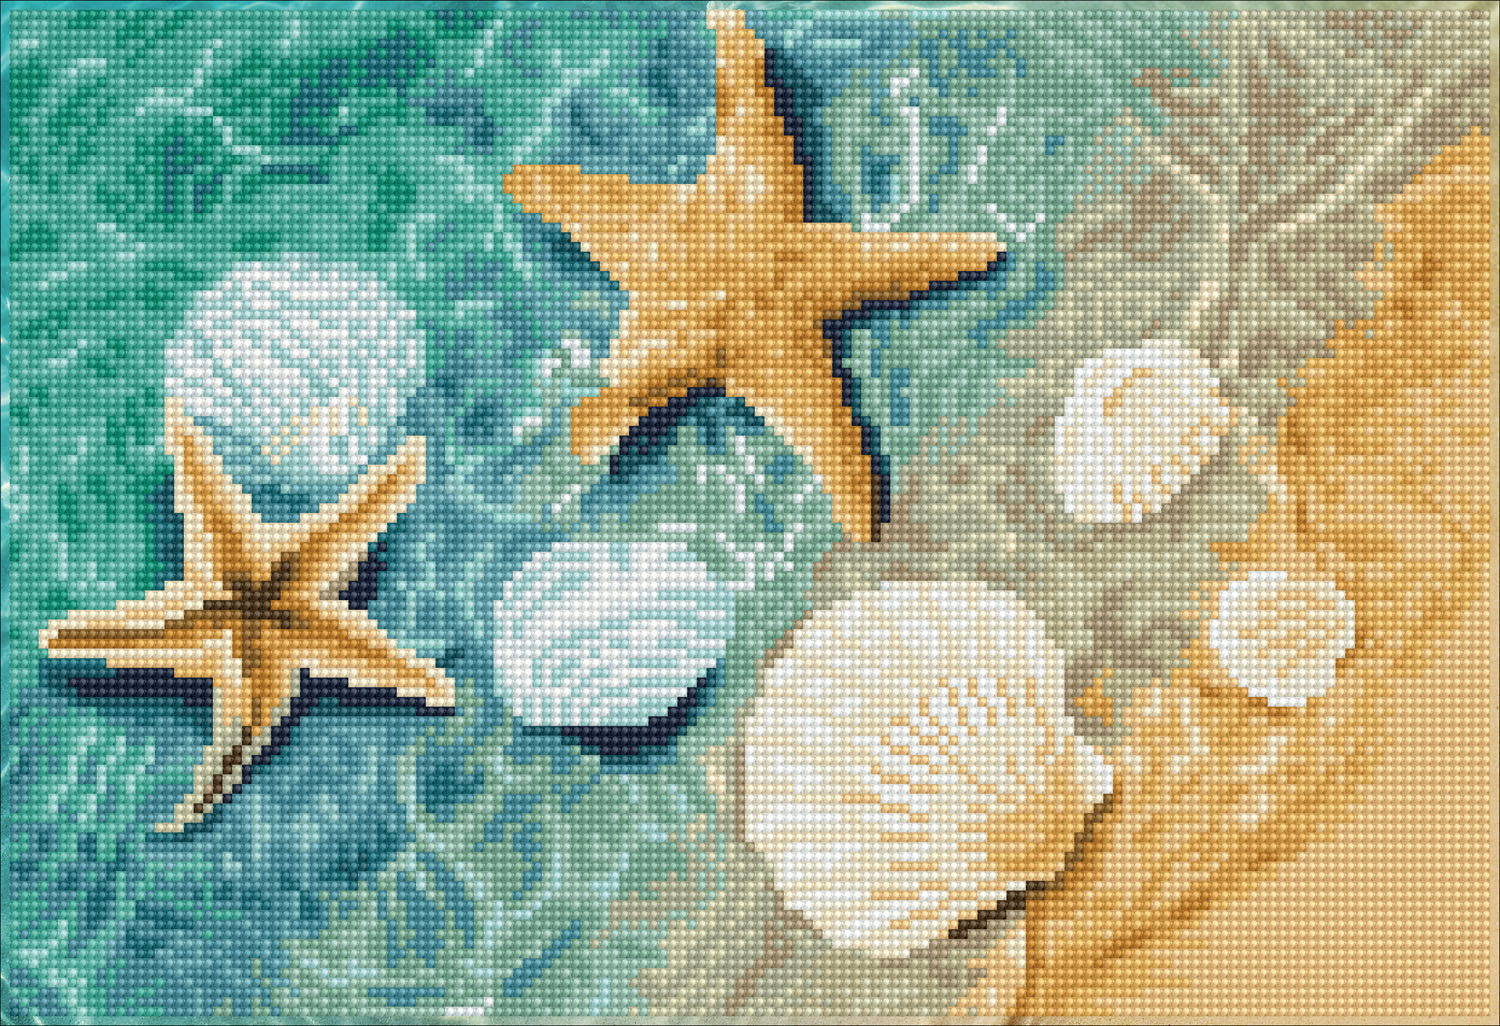 Tablou cu diamante – La țărmul mării, 28 x 41 cm edituradiana.ro imagine 2022